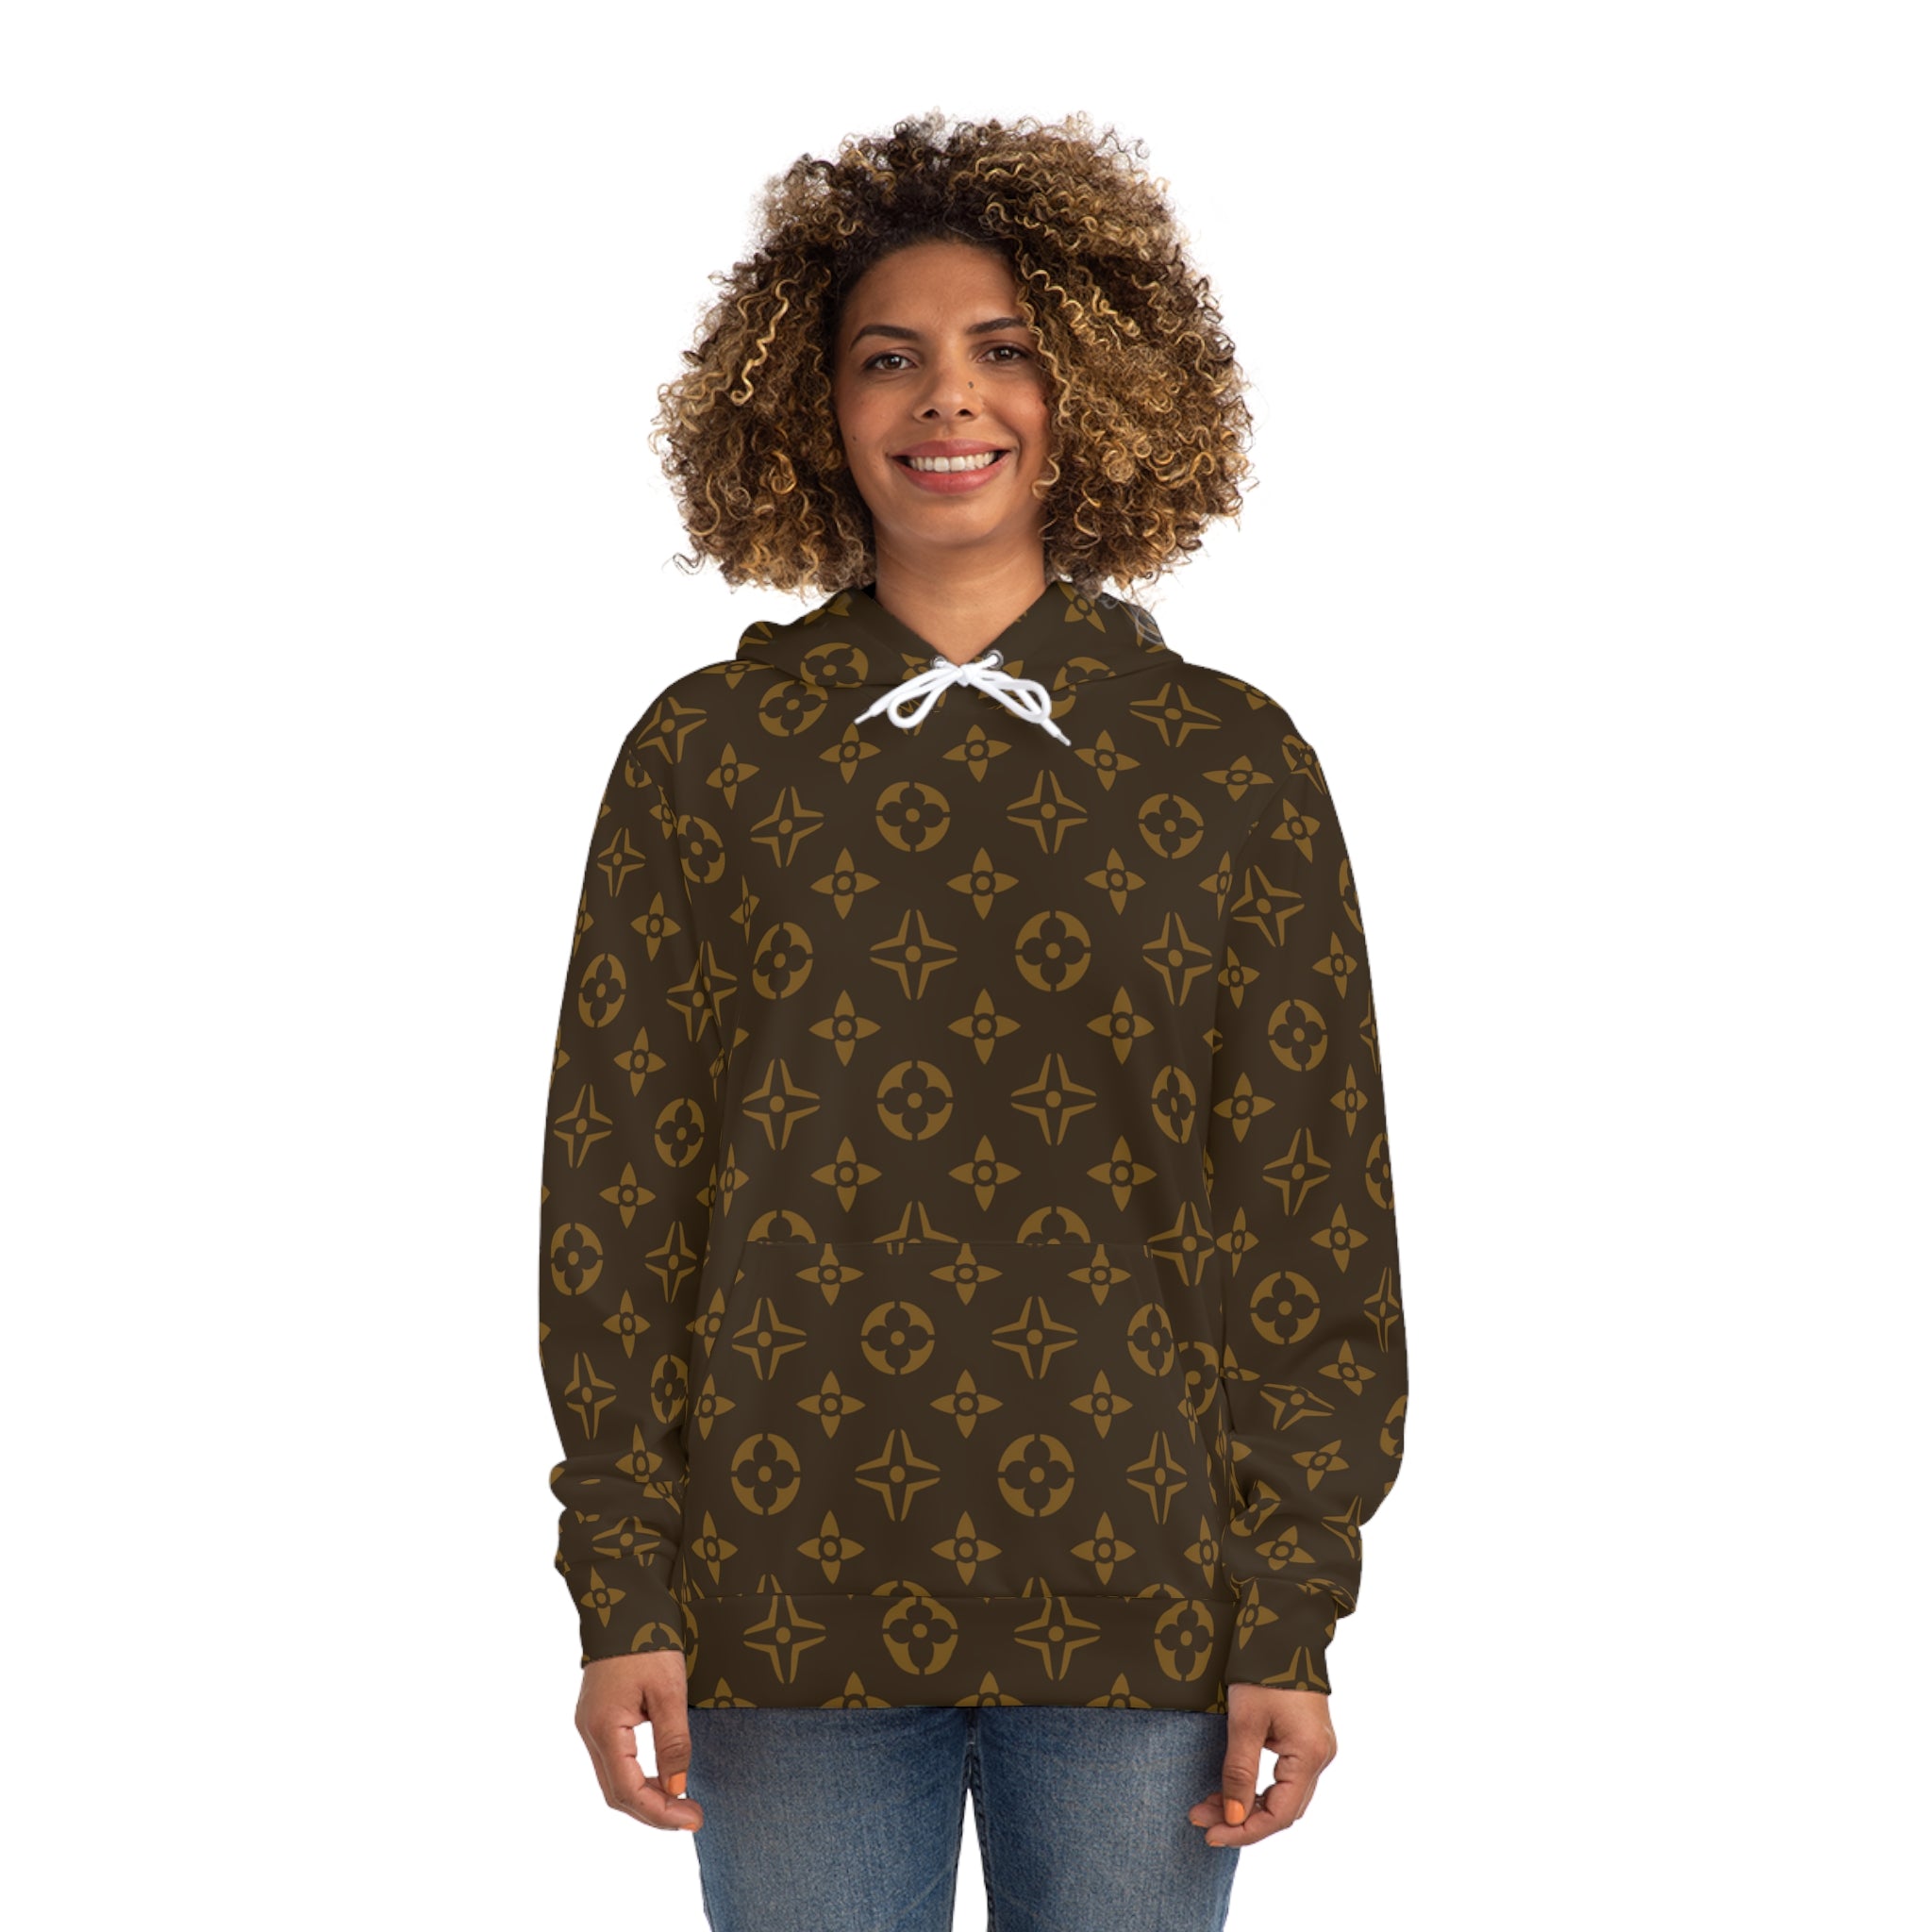  Abby Pattern Icons in Brown Unisex Fashion Hoodie, Hooded Sweater, Streetwear Hooded Sweatshirt Hoodie